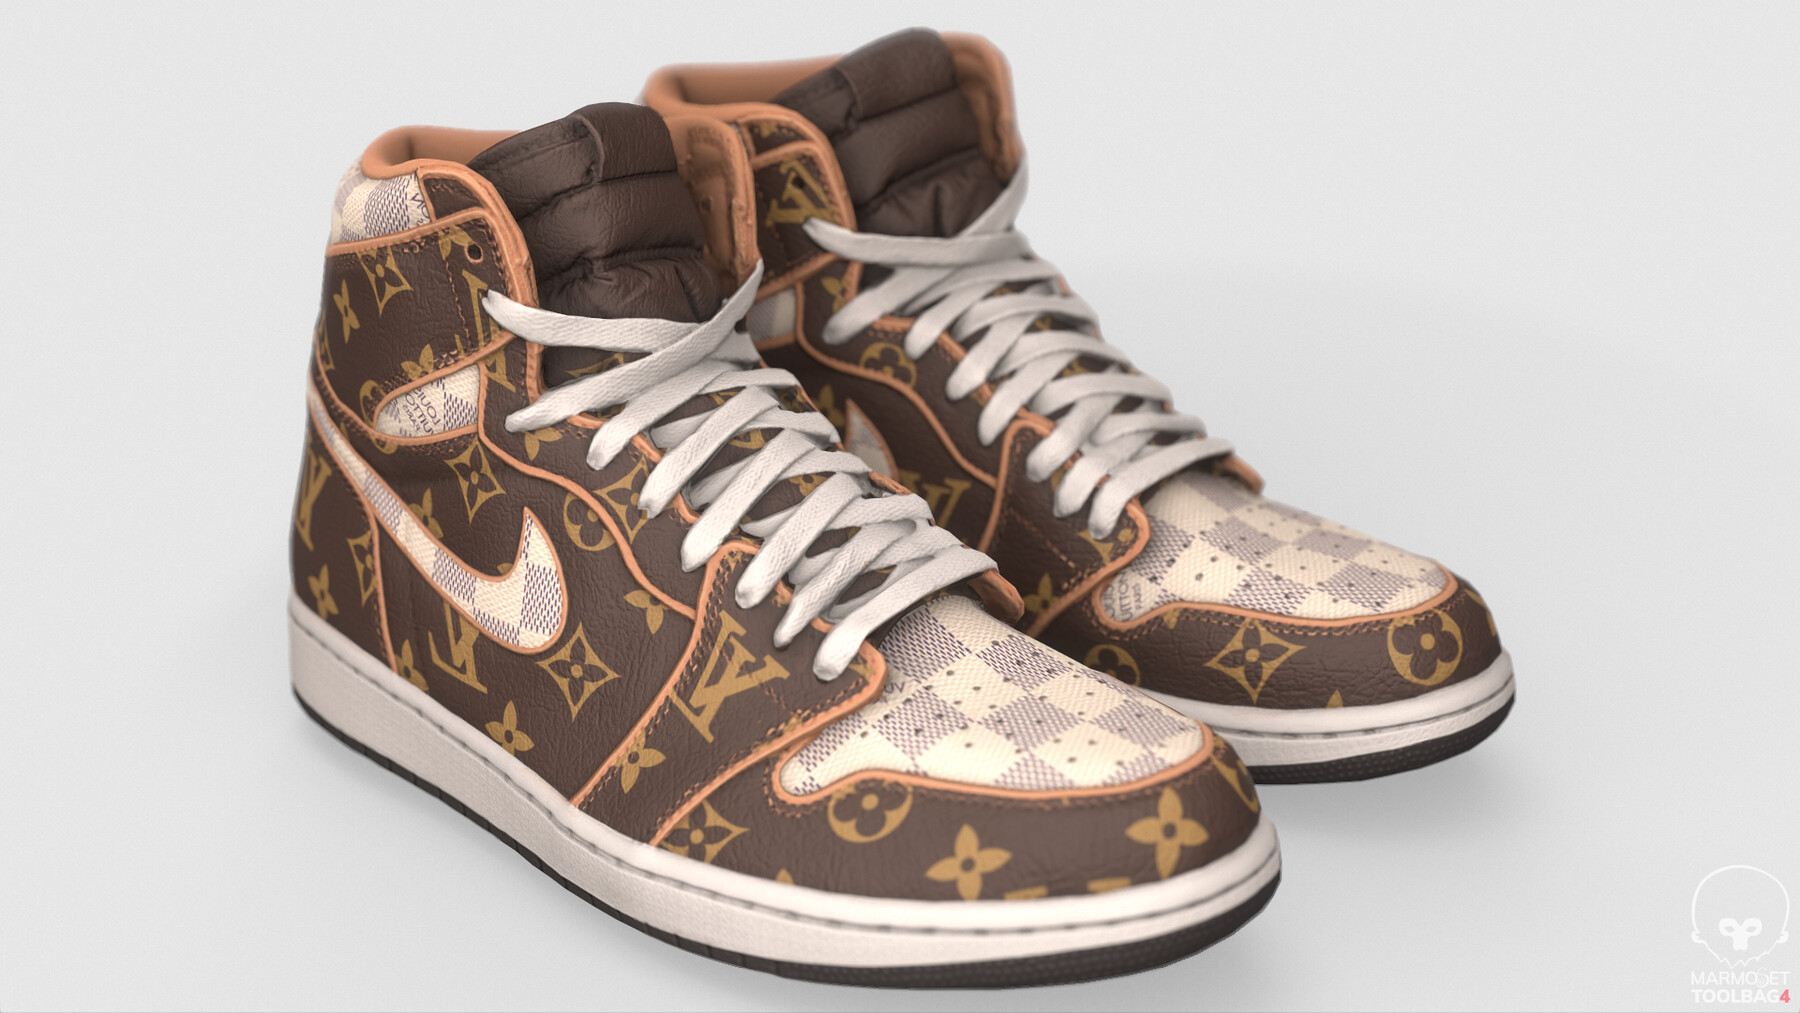 Sneaker News on X: Louis Vuitton x Air Jordan 1 Concept